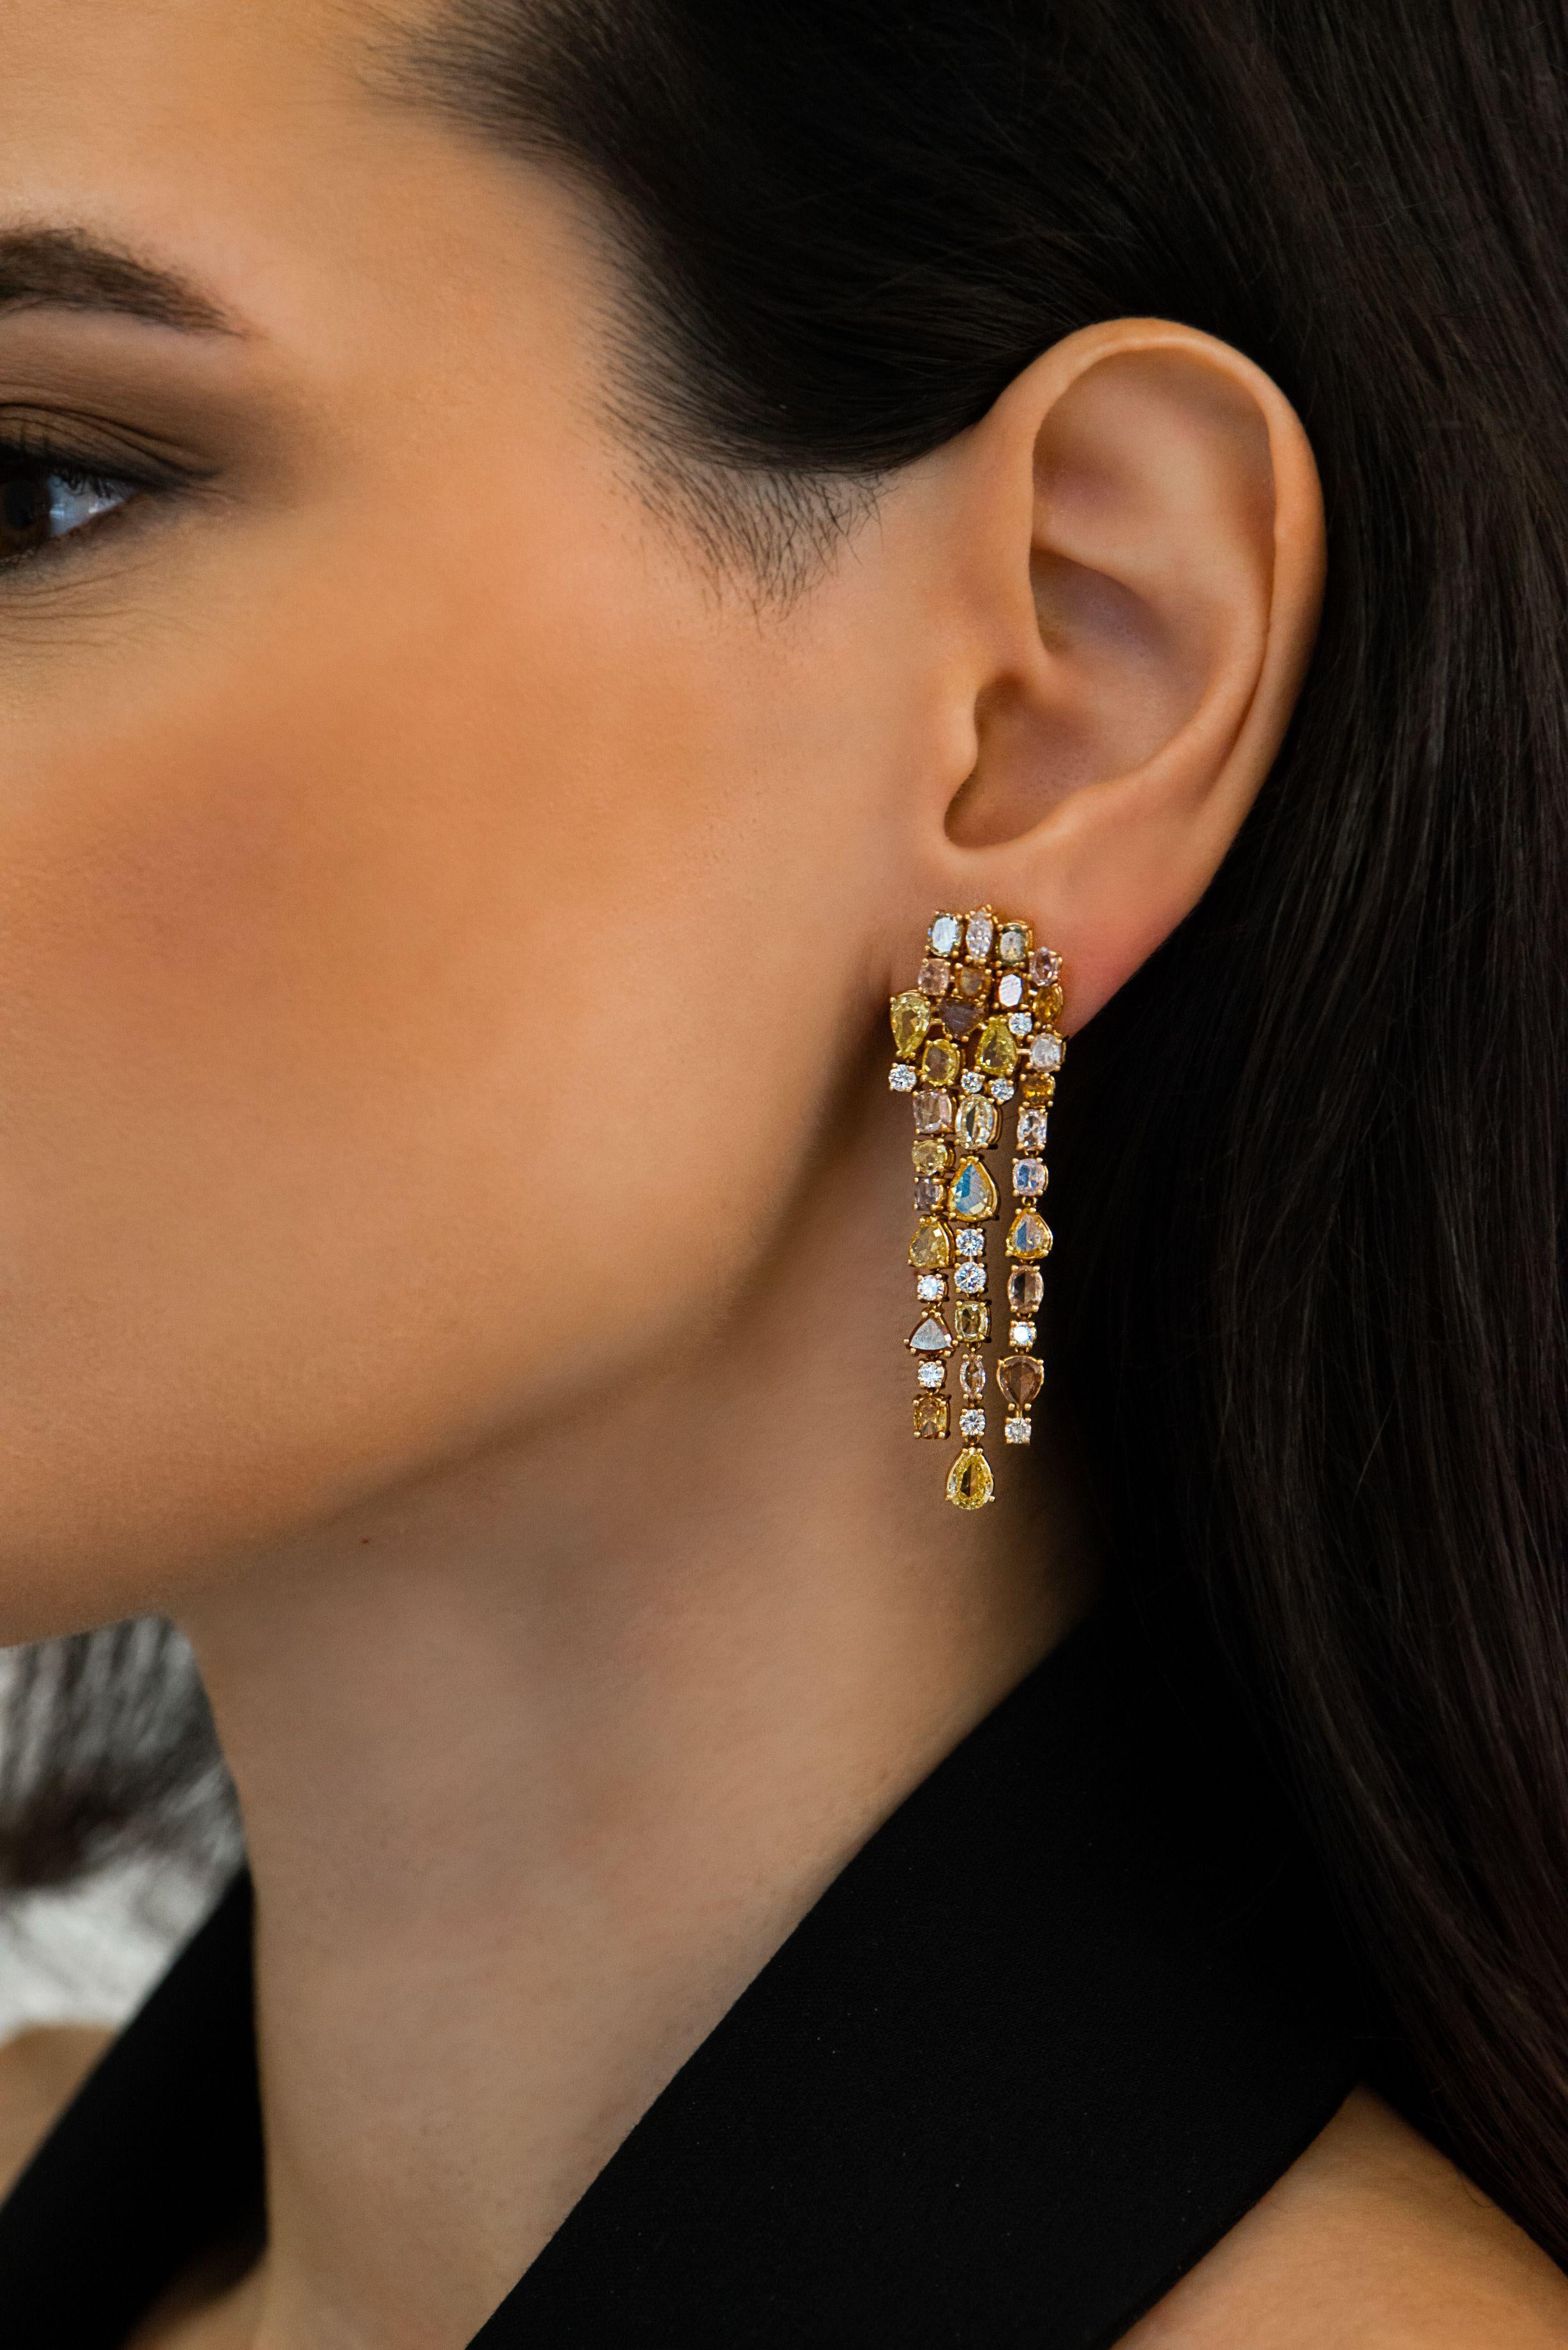 Diese exklusiven Kronleuchter-Ohrringe aus 18 Karat Roségold sind aus unserer Divine-Kollektion. Diese Kronleuchter-Ohrringe sind eine perfekte Kombination aus natürlichen weißen Diamanten von insgesamt 1,22 Karat und ausgefallenen gelben Diamanten